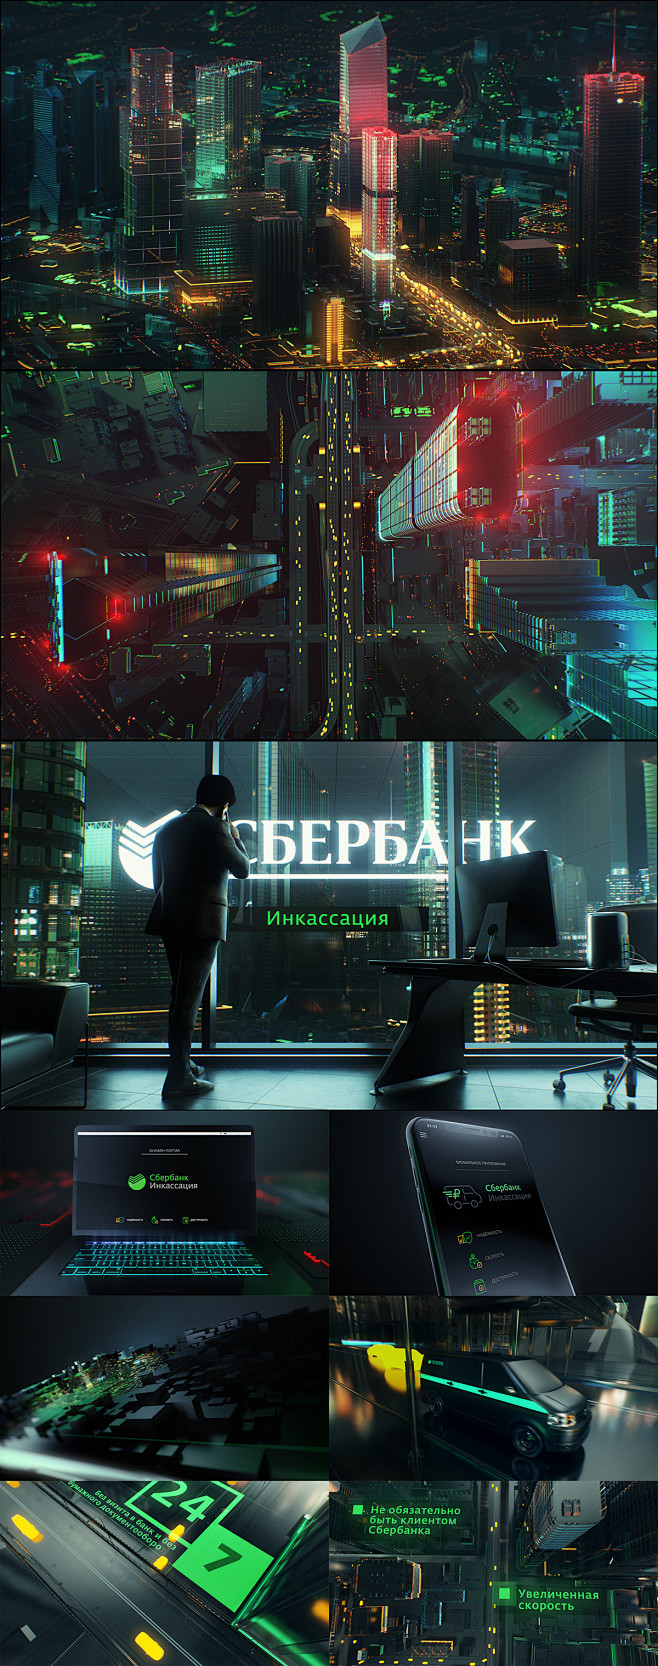 Sberbank | ‘Encashme...